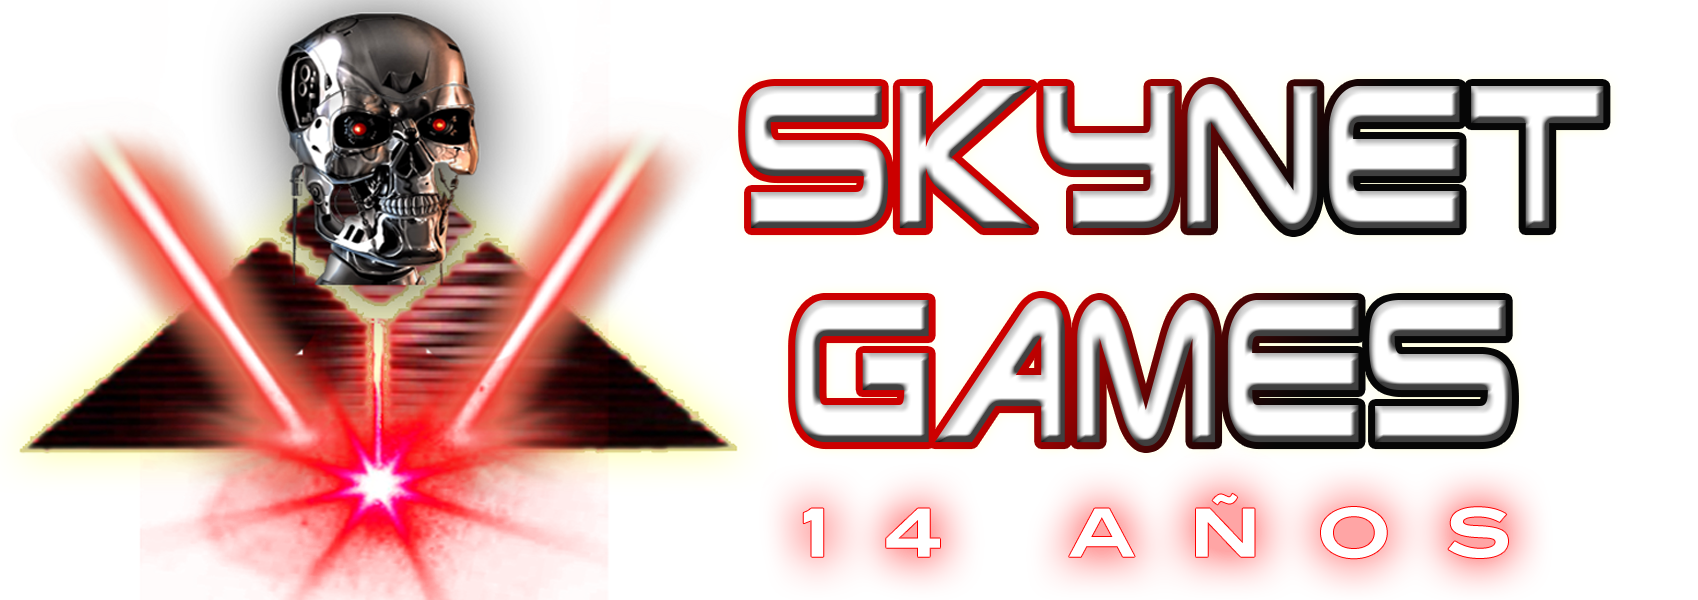 Skynet Games